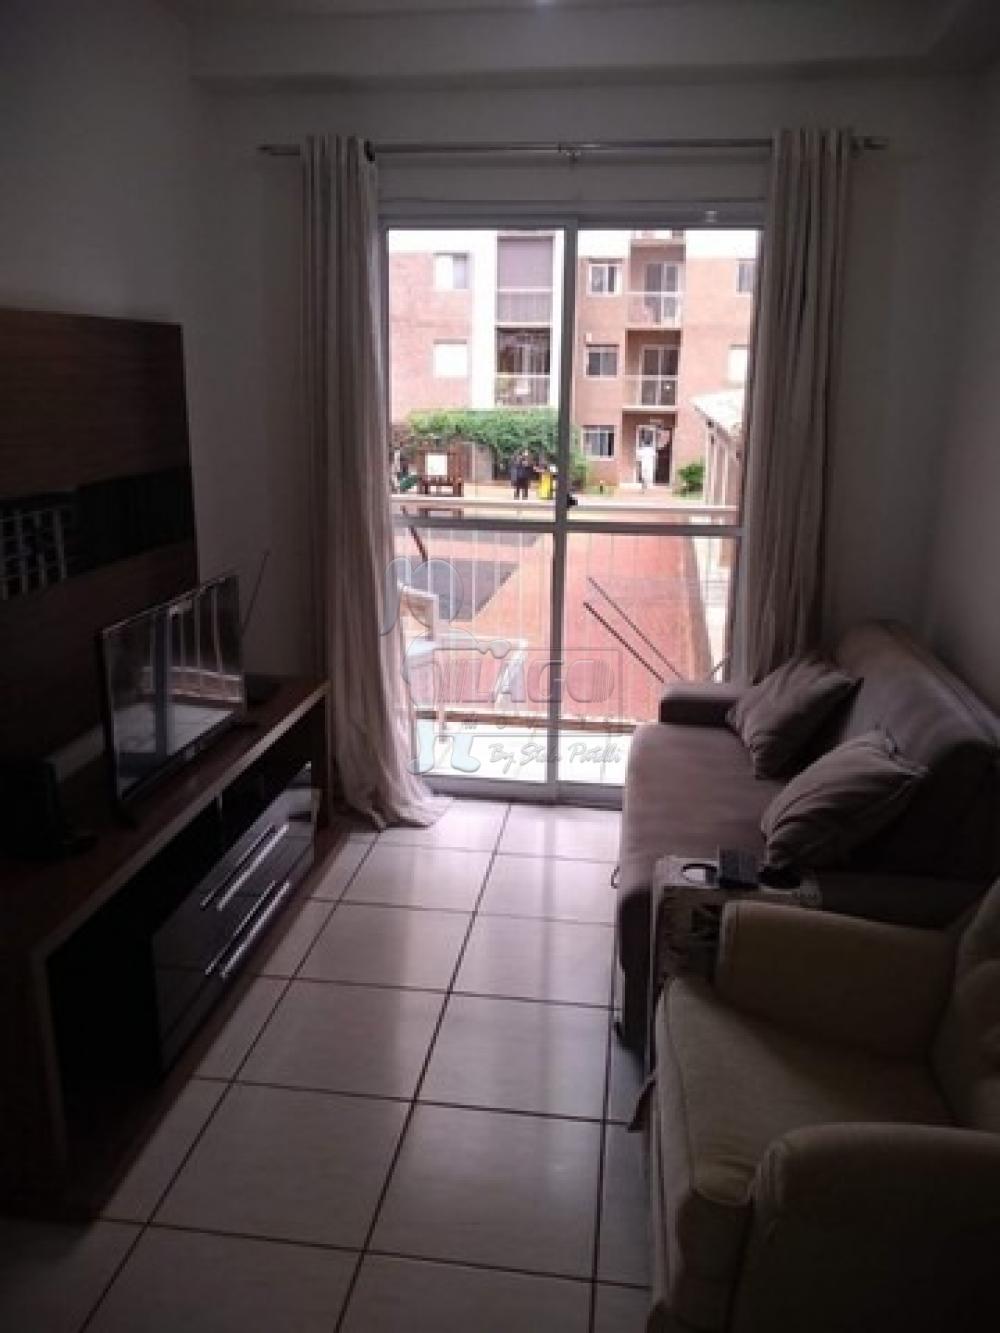 Alugar Apartamentos / Padrão em Ribeirão Preto R$ 1.600,00 - Foto 3